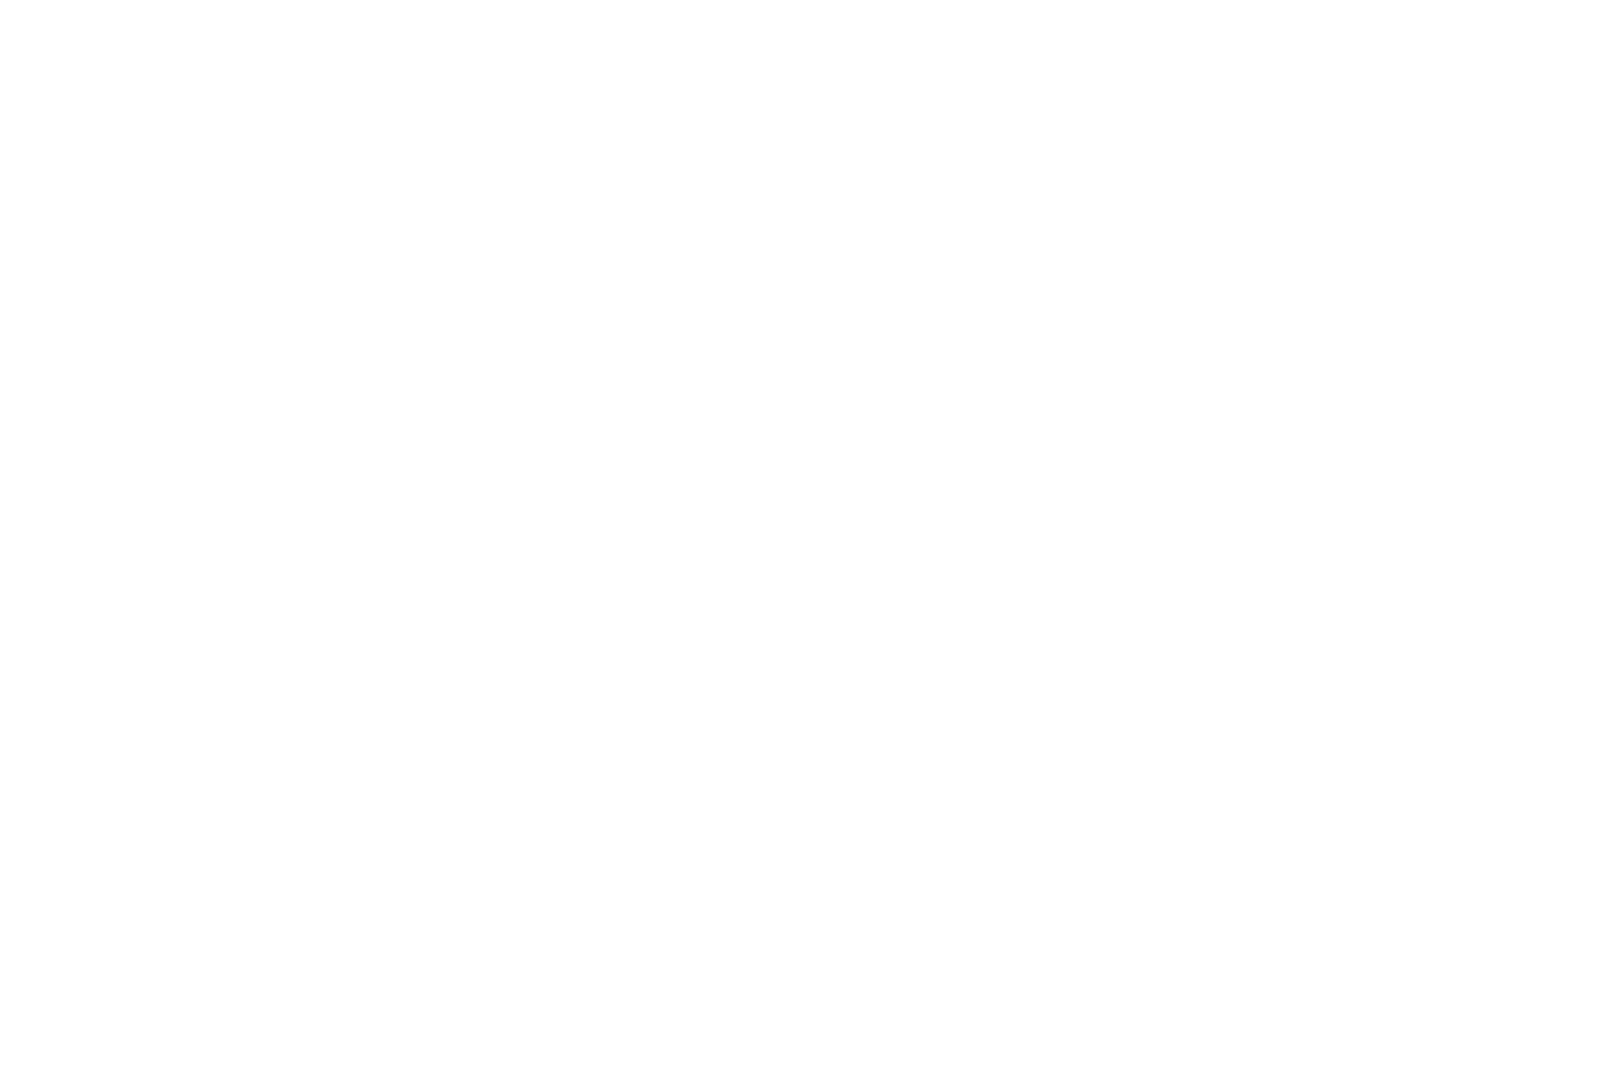 Ловля белых куропаток сетью зимой в тундре на Ямале. Девушка-ненка развешивает сеть на дереве. Ненцы оленеводы-кочевники, Ямал и Полярный Урал. Фото — Машкова Елена фотограф